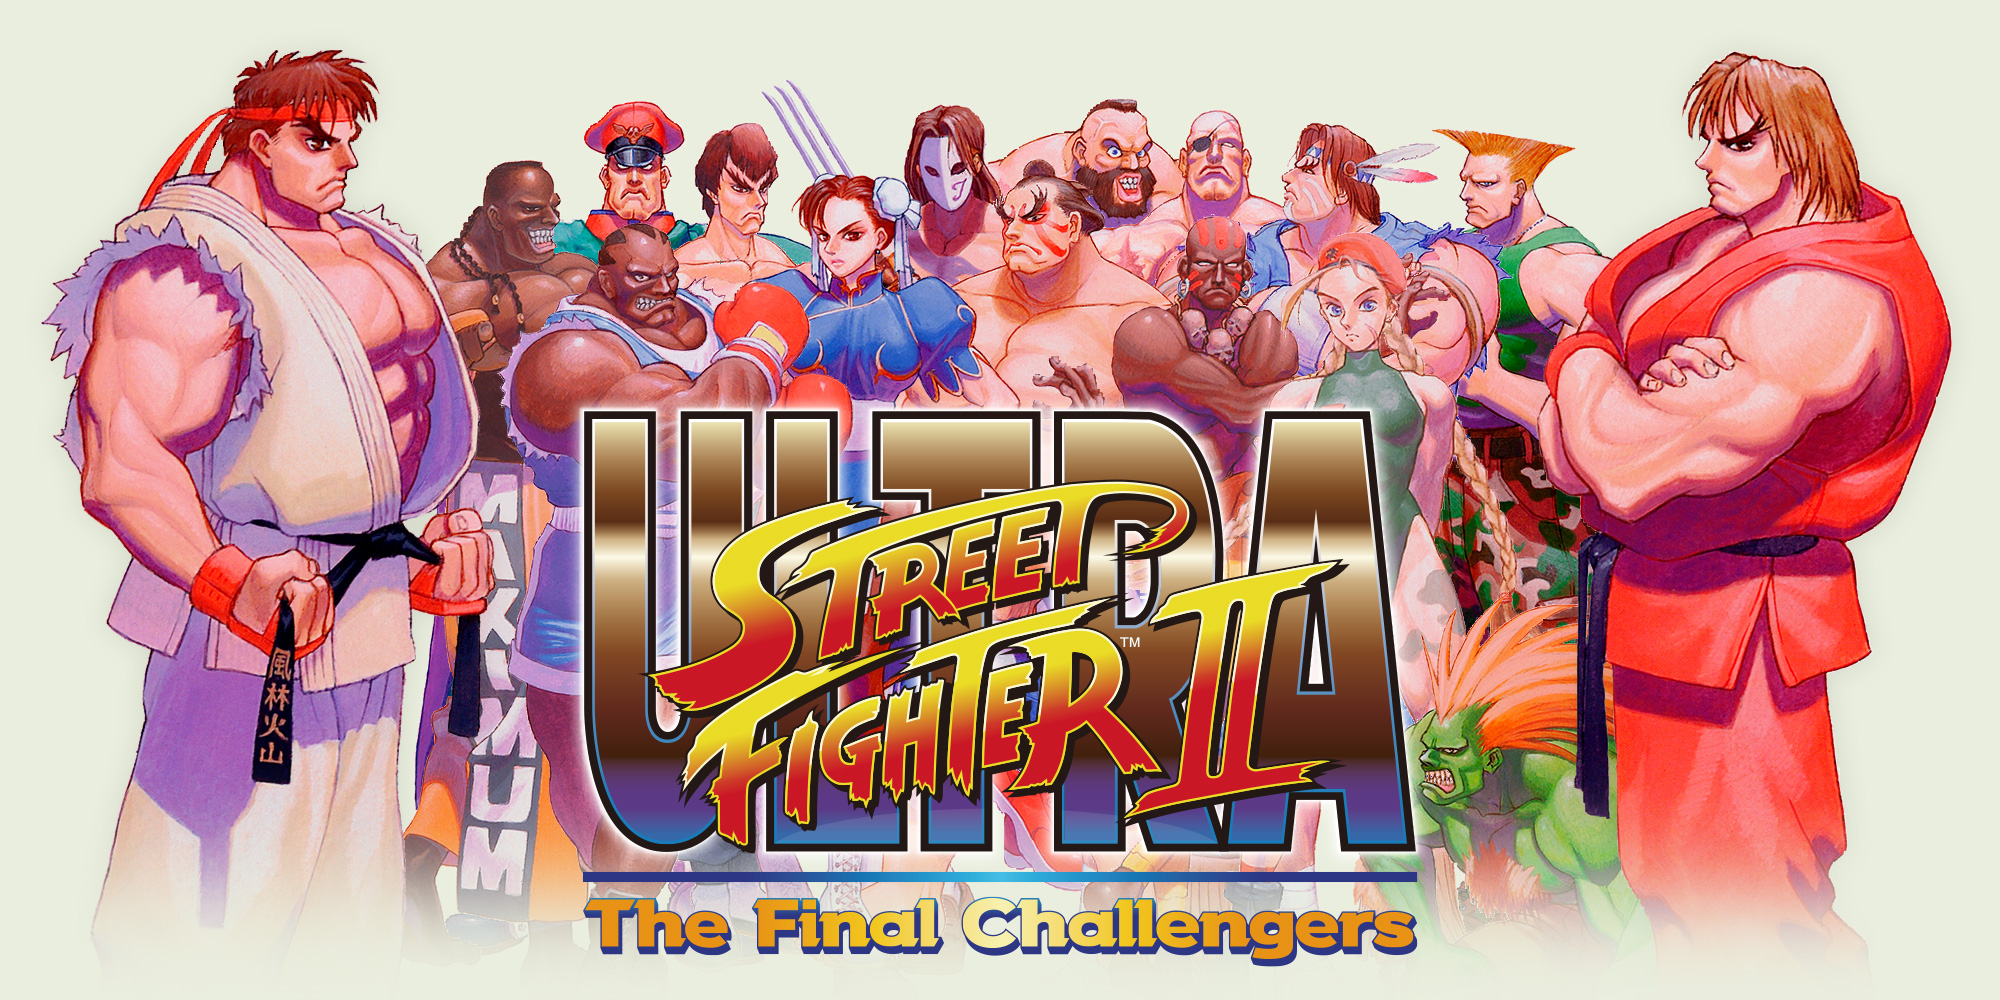 Gran Barrera de Coral cometer Coincidencia ULTRA STREET FIGHTER II: The Final Challengers | Juegos de Nintendo Switch  | Juegos | Nintendo